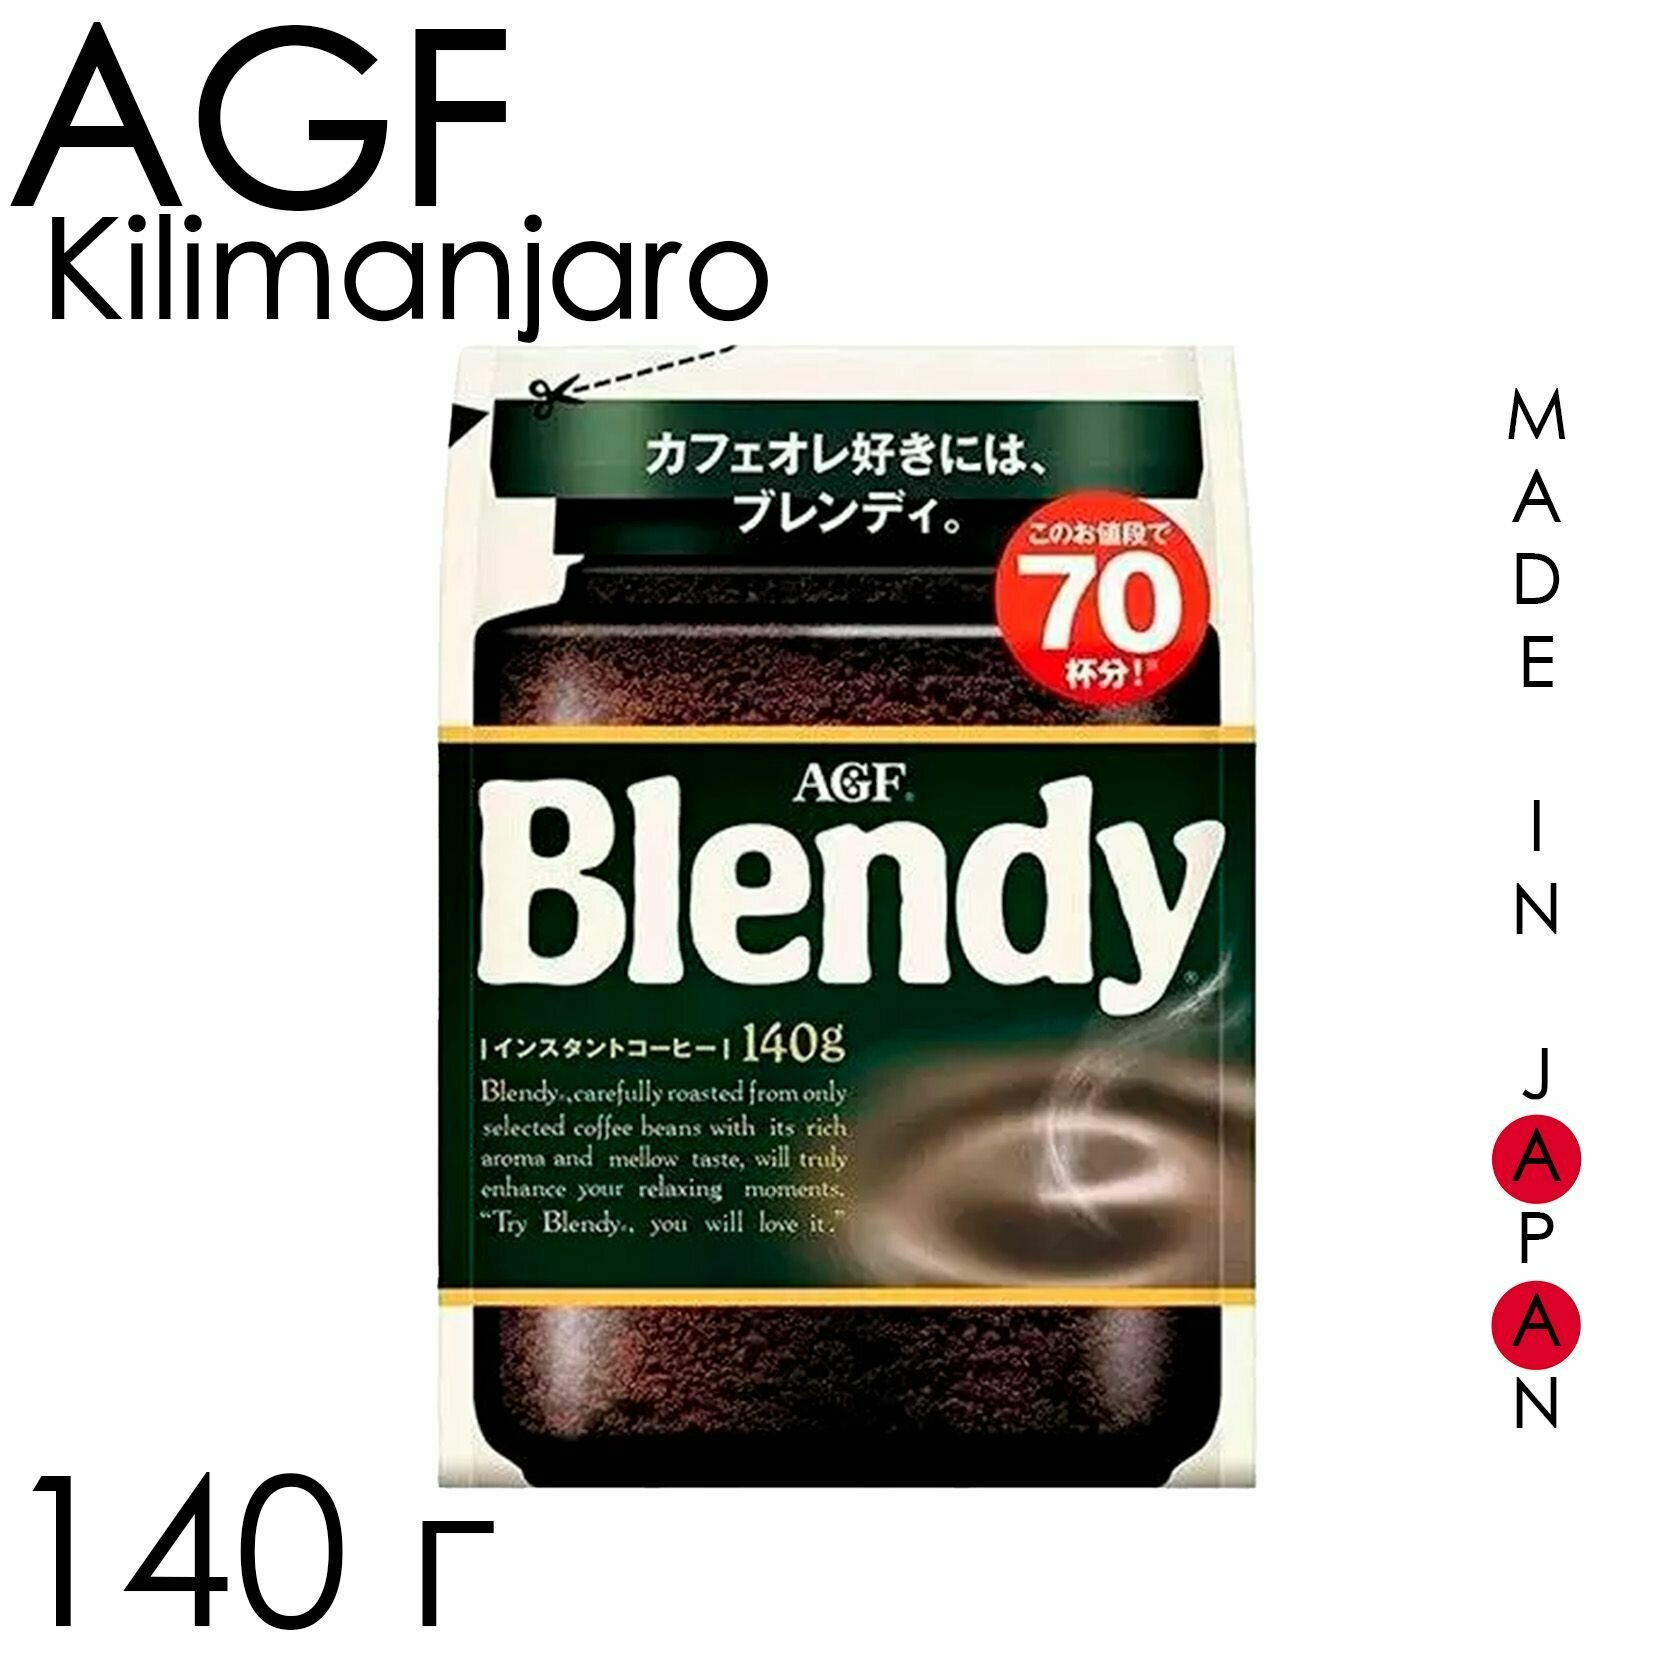 AGF Blendy Kilimanjaro растворимый кофе в мягкой упаковке, Япония 140 Г